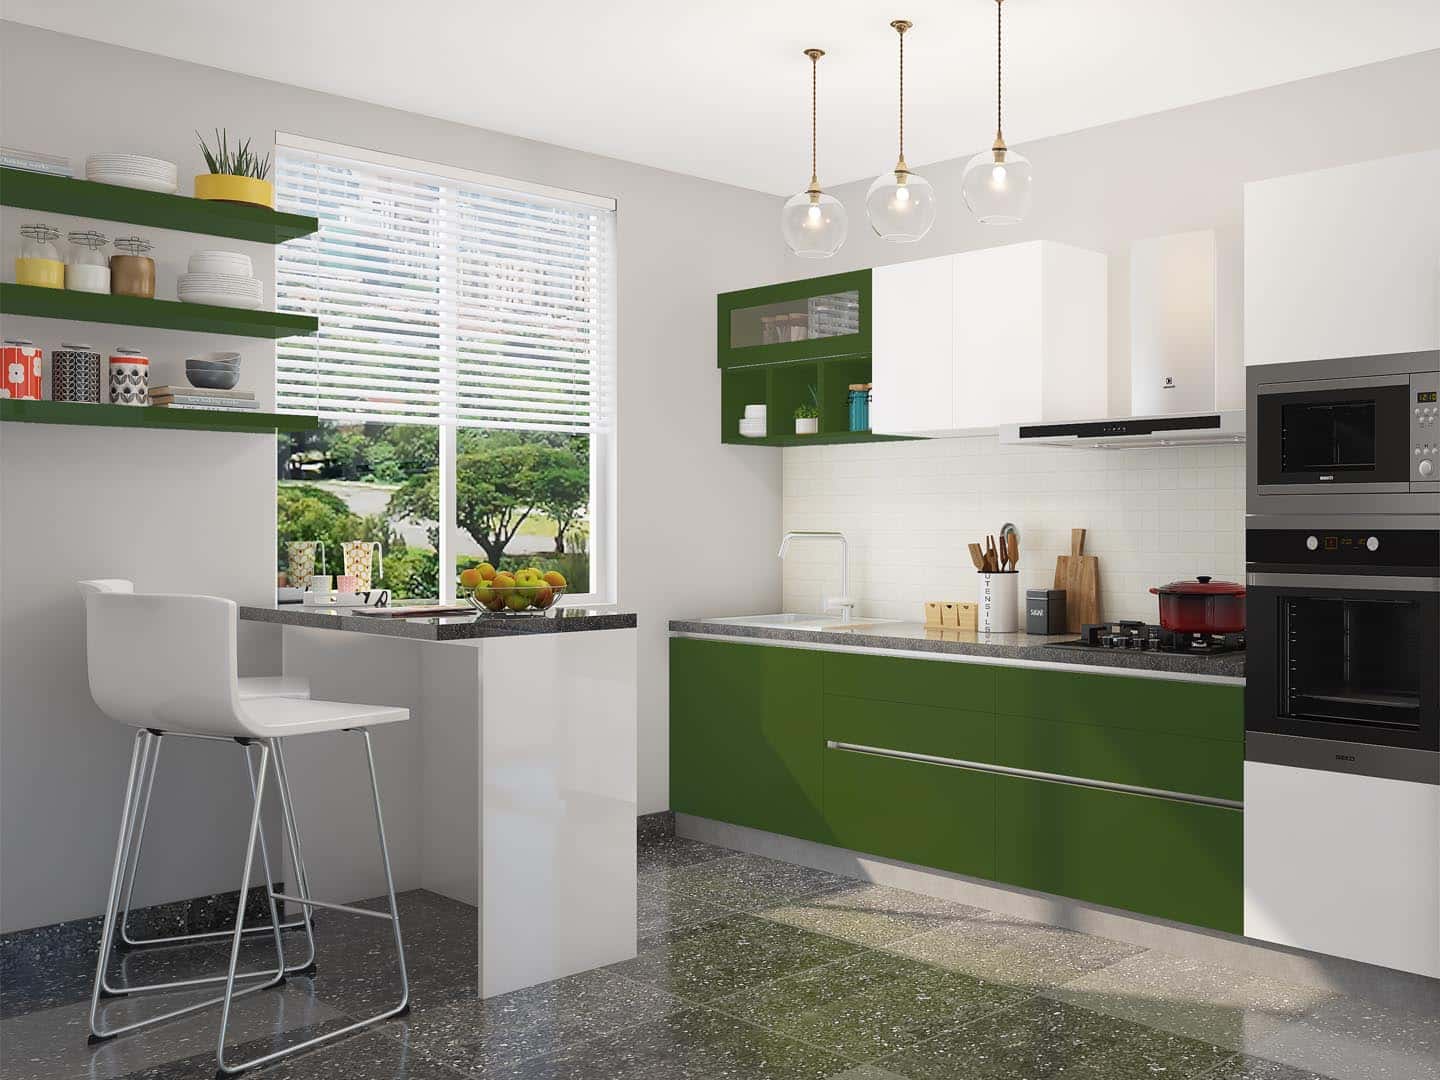 green against white kitchen laminates